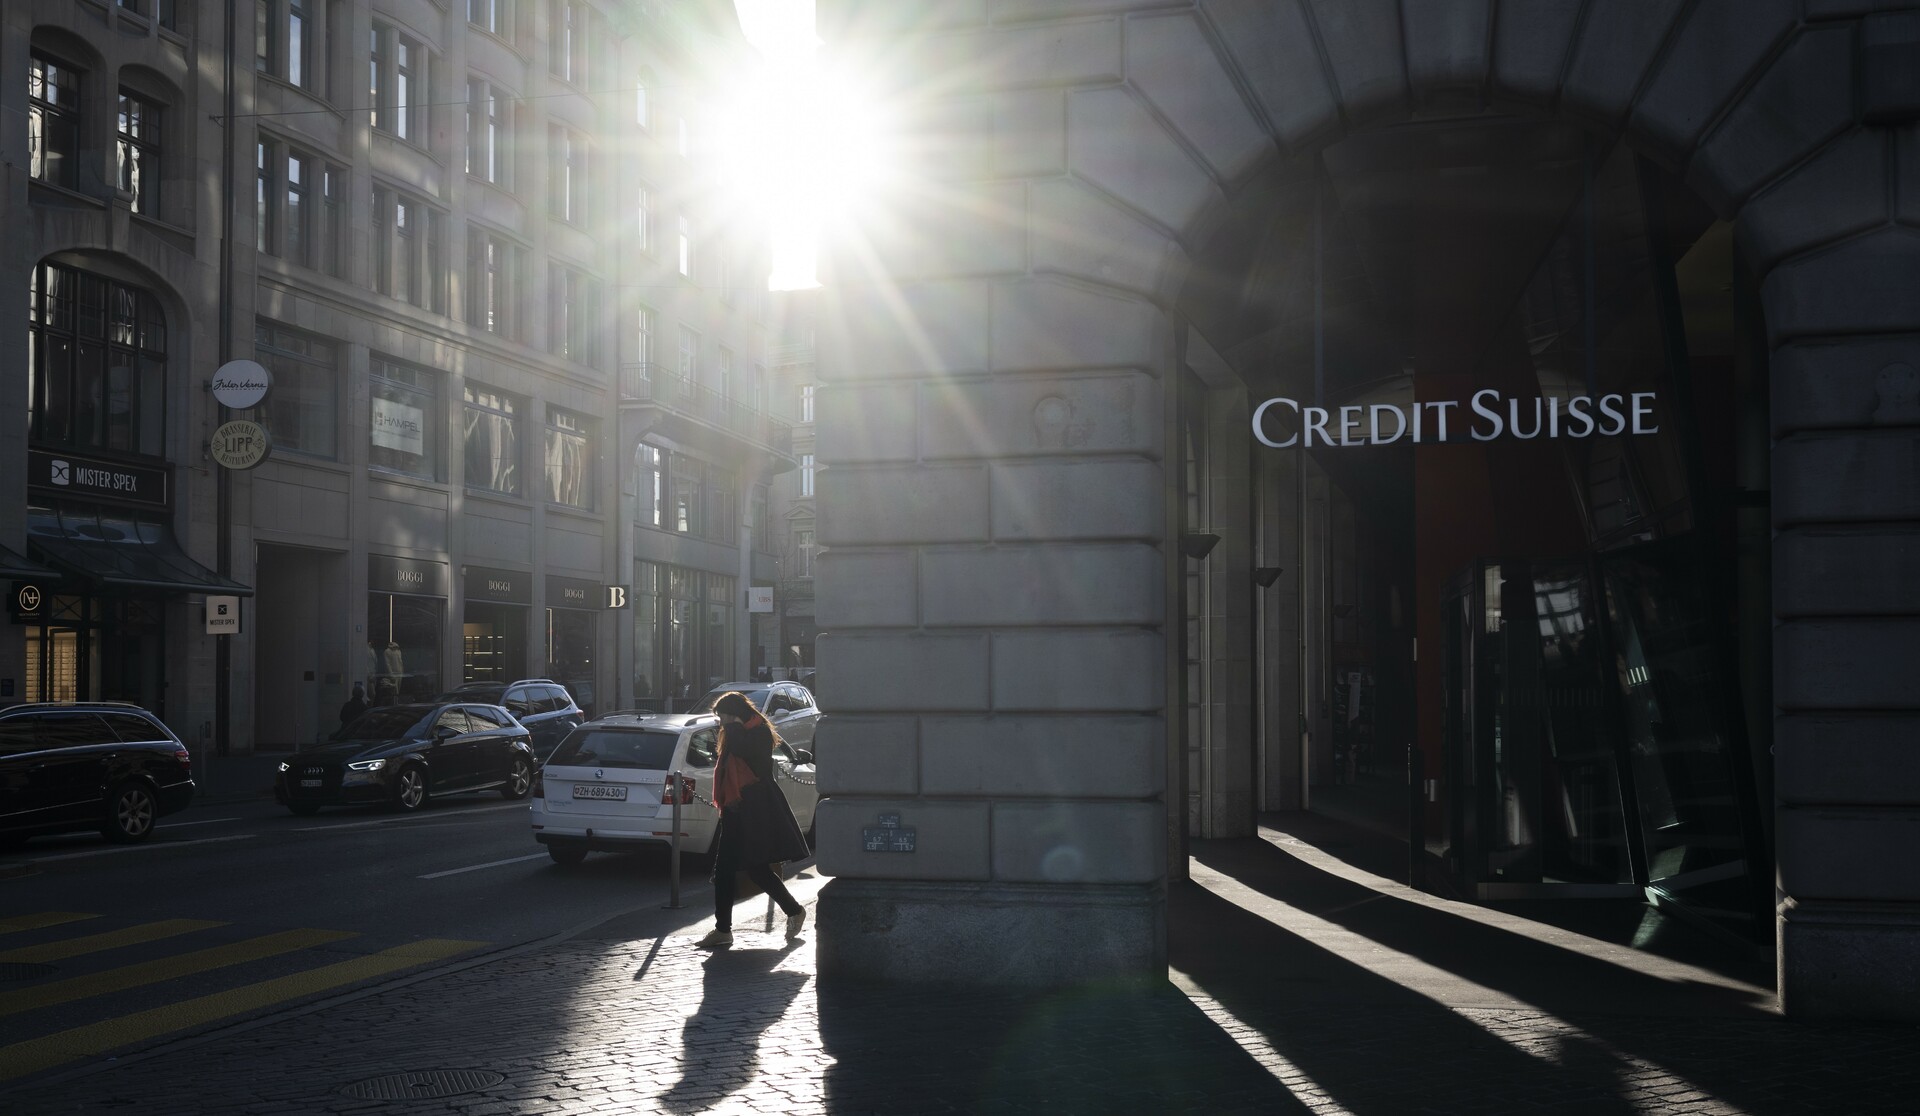 Acelerada compra de Credit Suisse por UBS afronta ahora posibles litigios